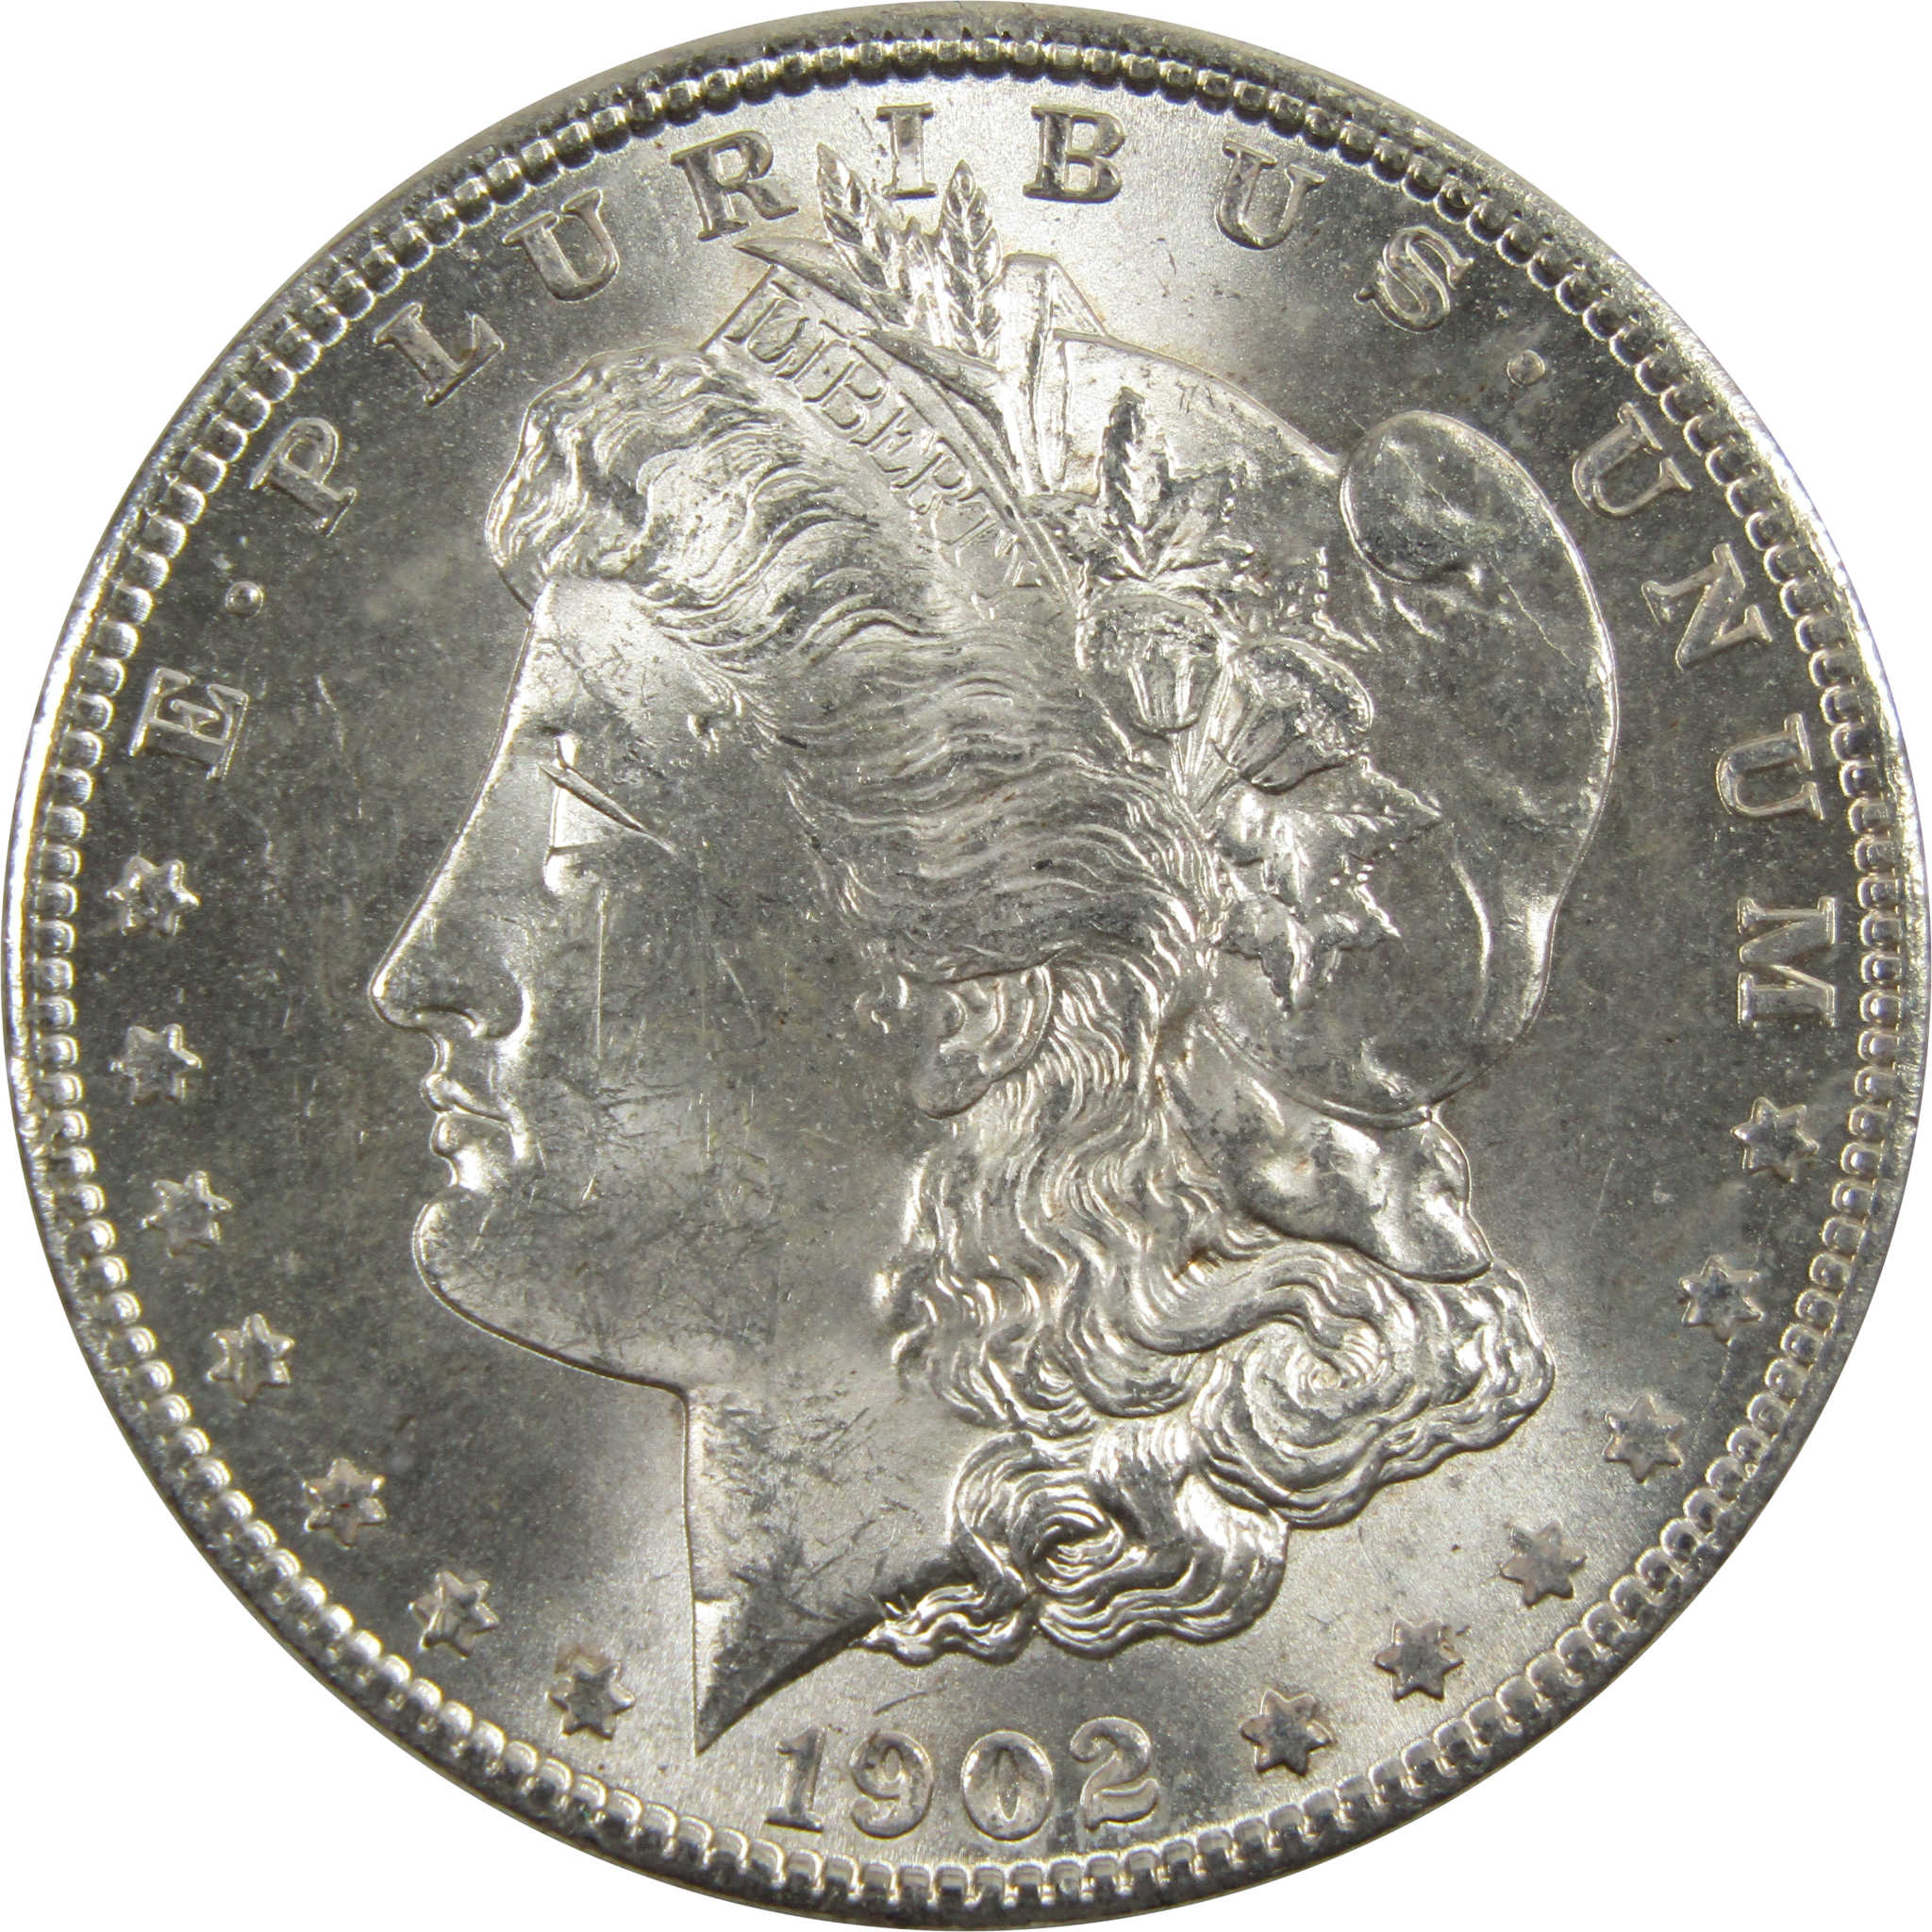 1902 O Morgan Dollar BU Uncirculated 90% Silver $1 Coin SKU:I5200 - Morgan coin - Morgan silver dollar - Morgan silver dollar for sale - Profile Coins &amp; Collectibles